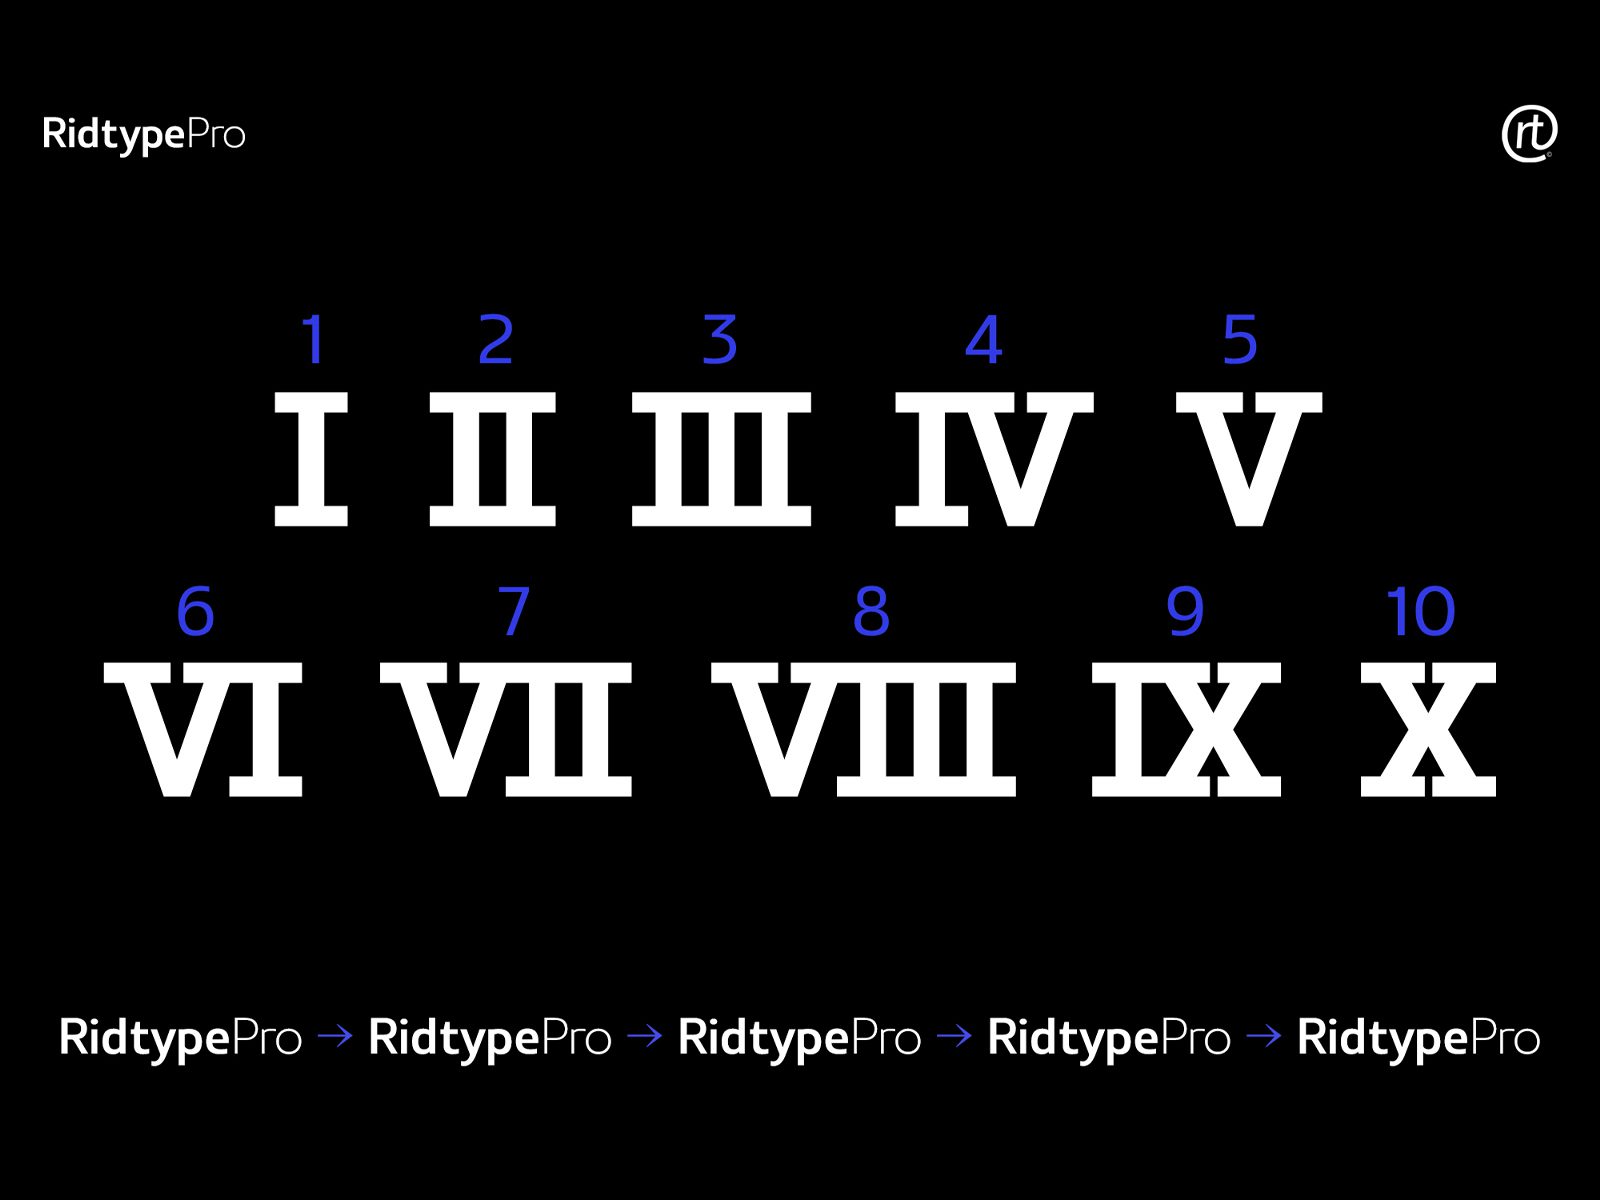 高质量现代品牌设计海报杂志排版无衬线英文字体 Ridtype Pro Font Family 设计素材 第5张